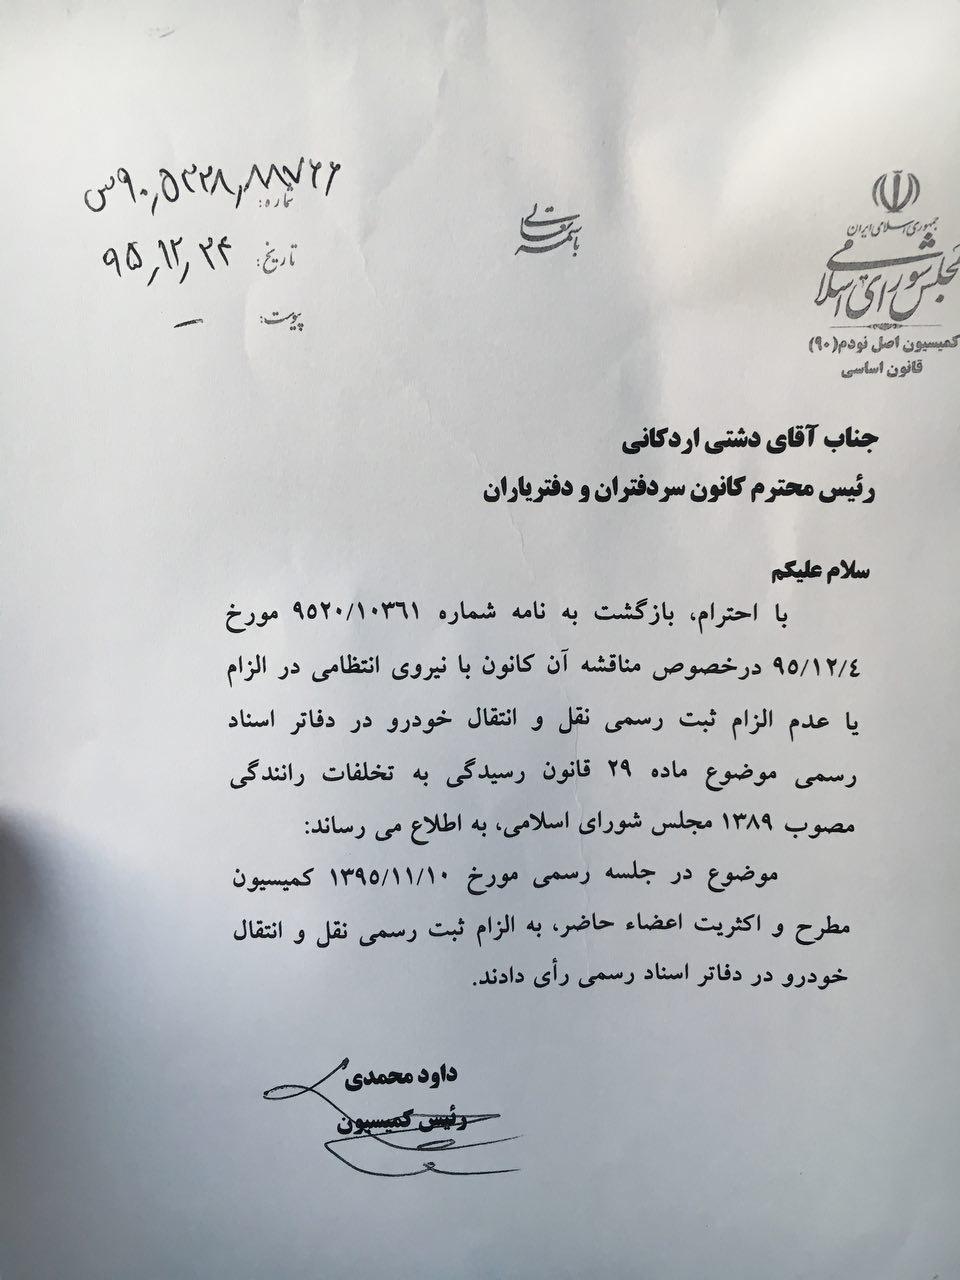 تاکید رییس کمیسیون اصل ٩٠ مجلس شورای اسلامی بر ثبت سند رسمی خودرو در دفاتر اسناد رسمی